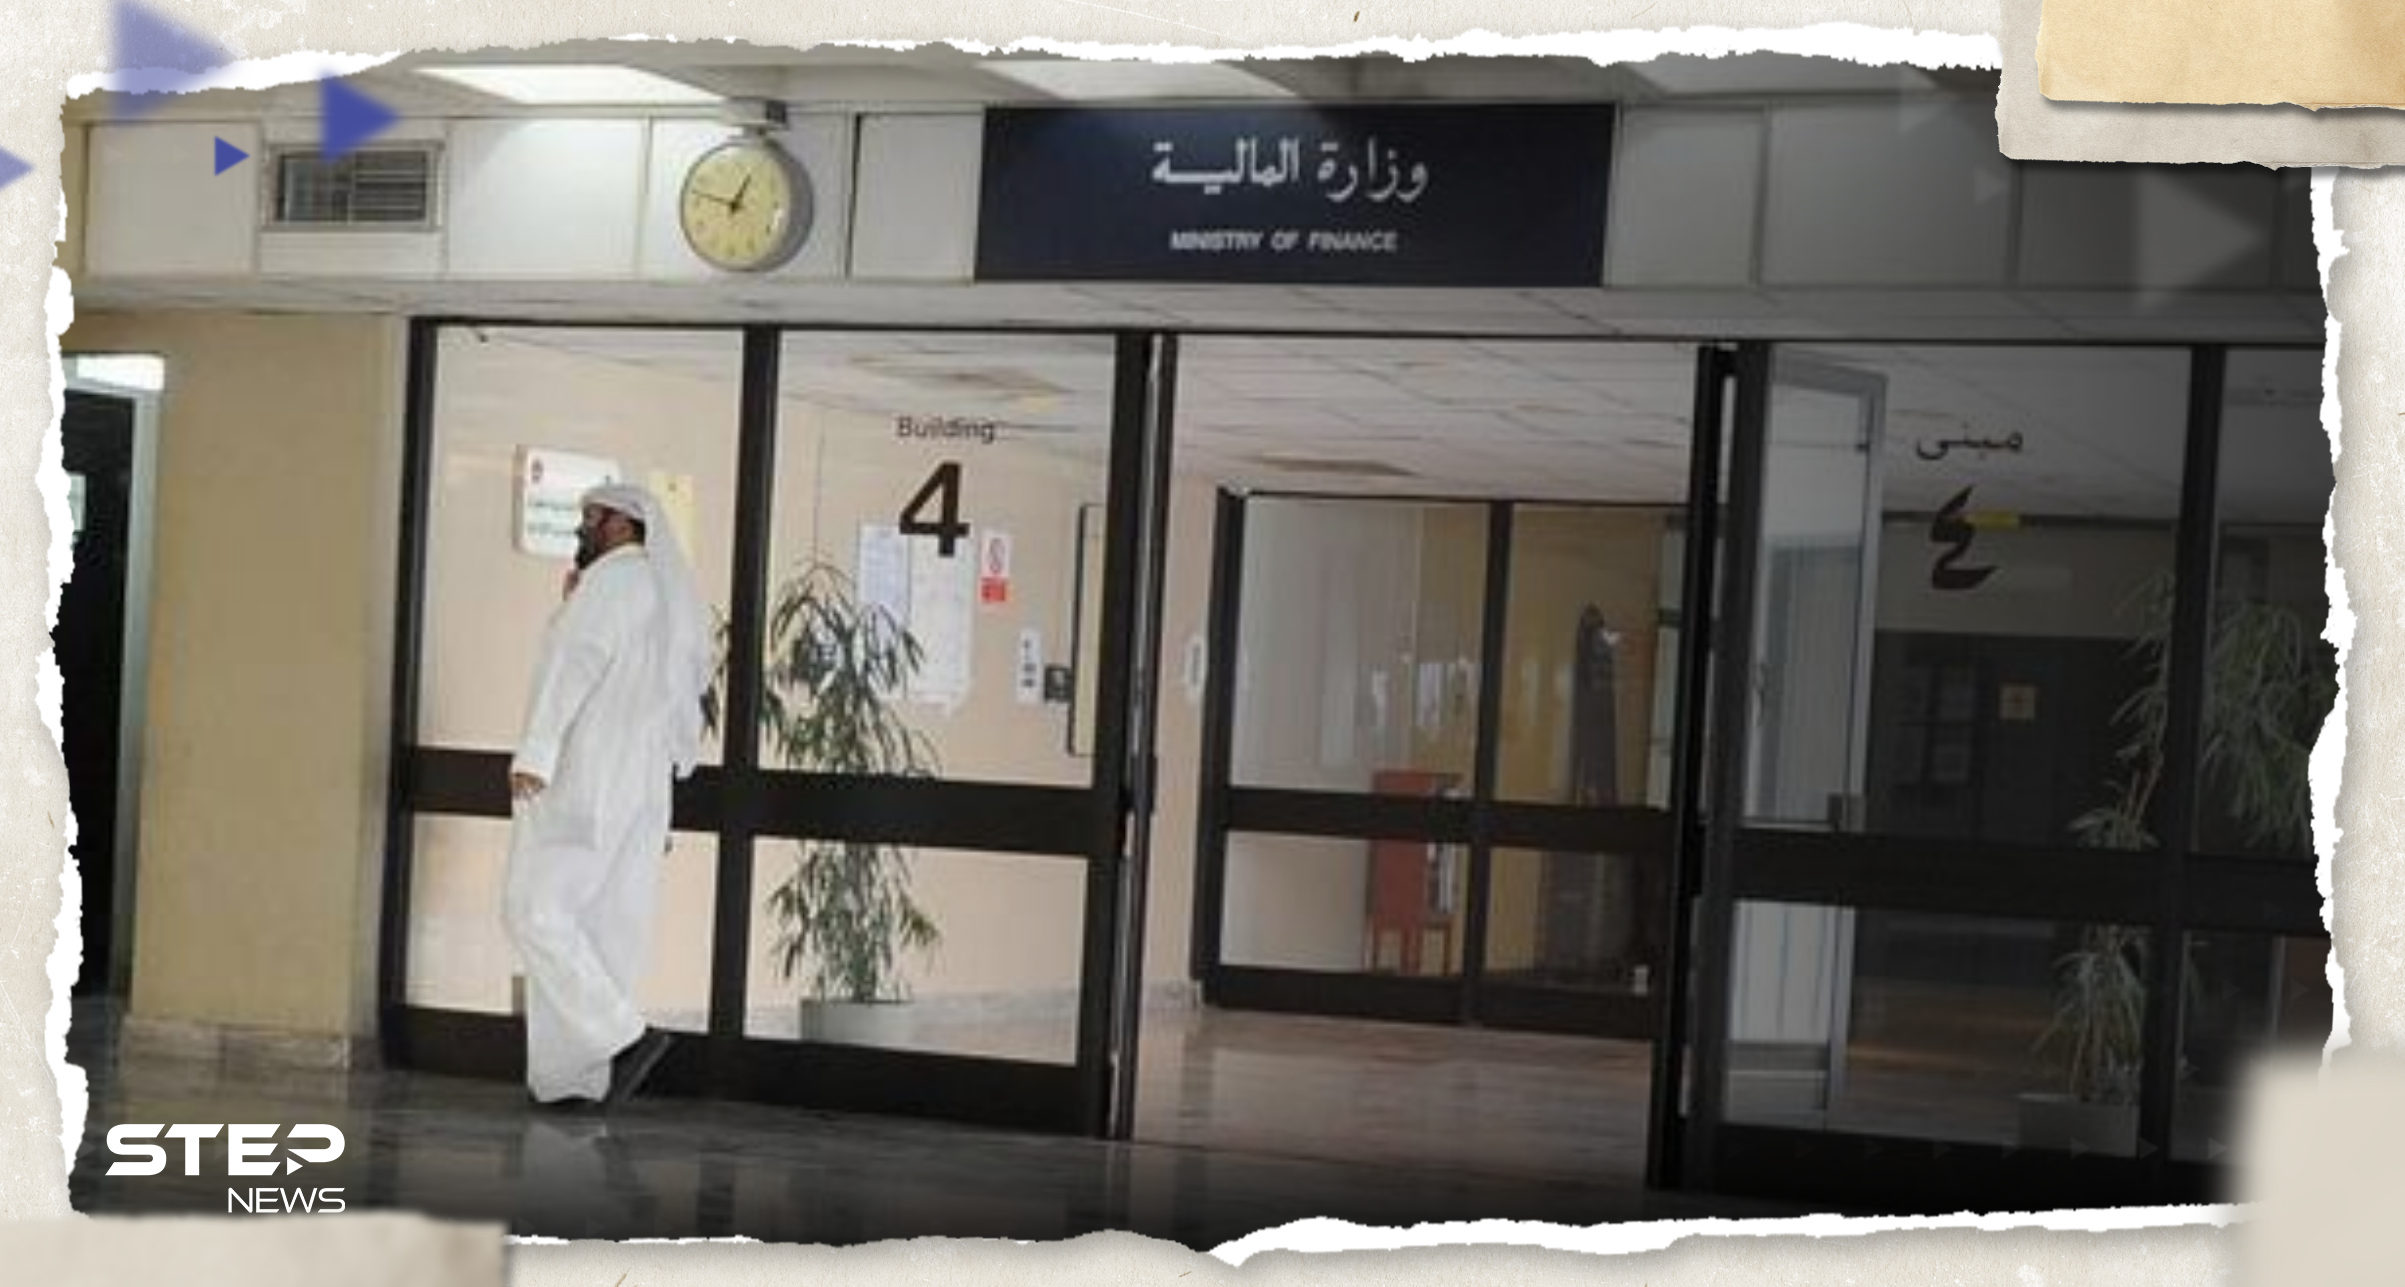 هاكر اخترق وزارة المالية الكويتية يطلب "فدية ضخمة" لإعادة البيانات